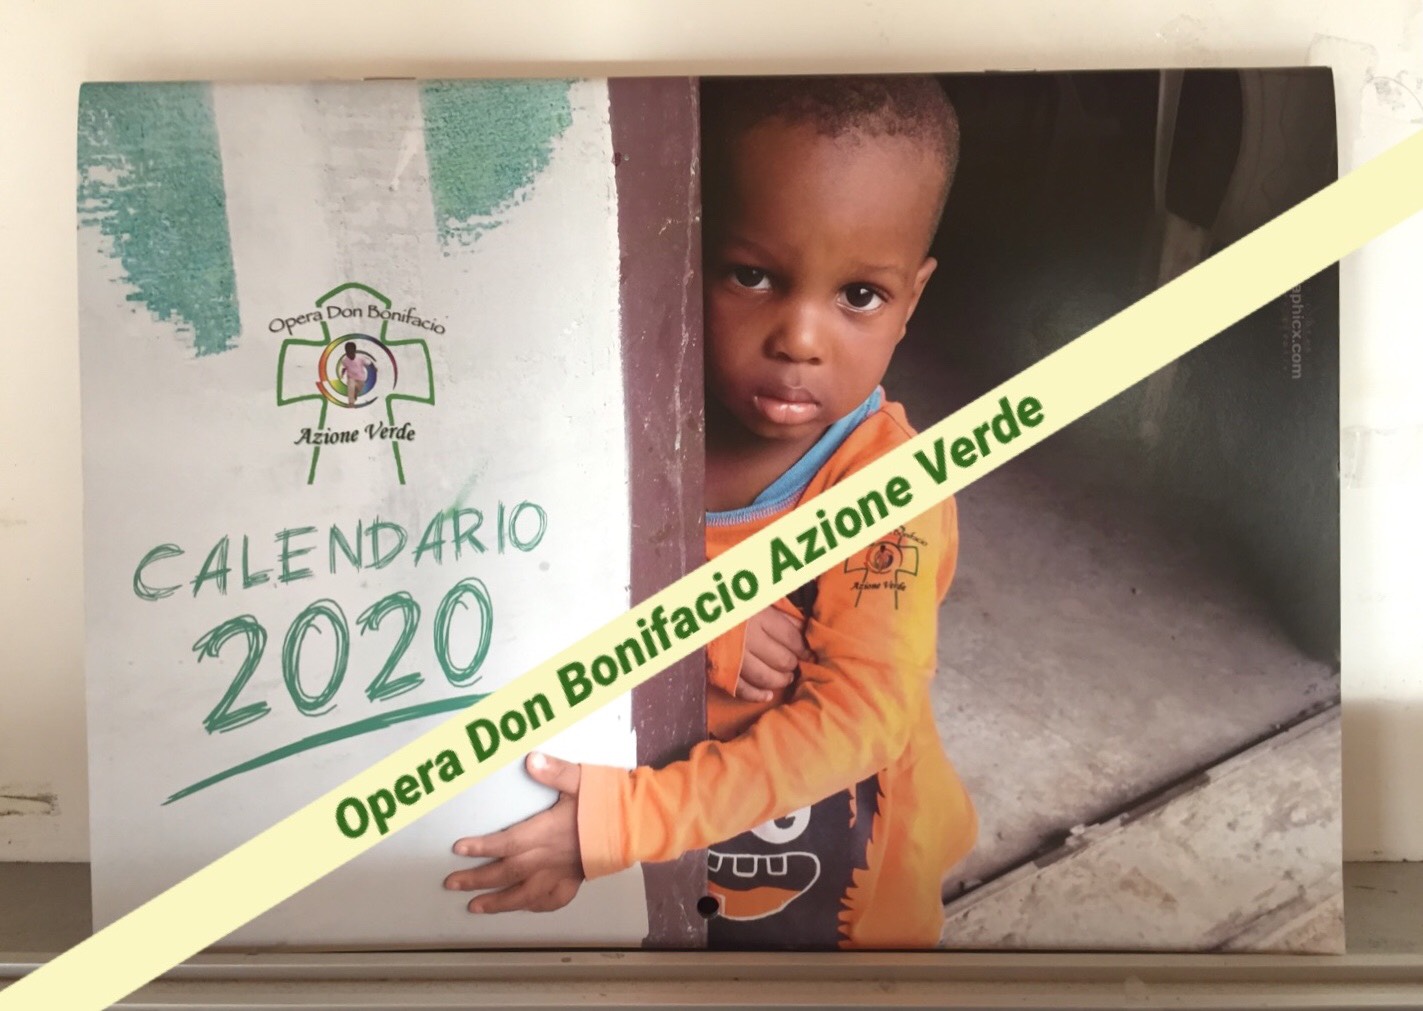 Opera Don Bonifacio Azione Verde cerca ginecologi e pediatri volontari per le prossime missioni